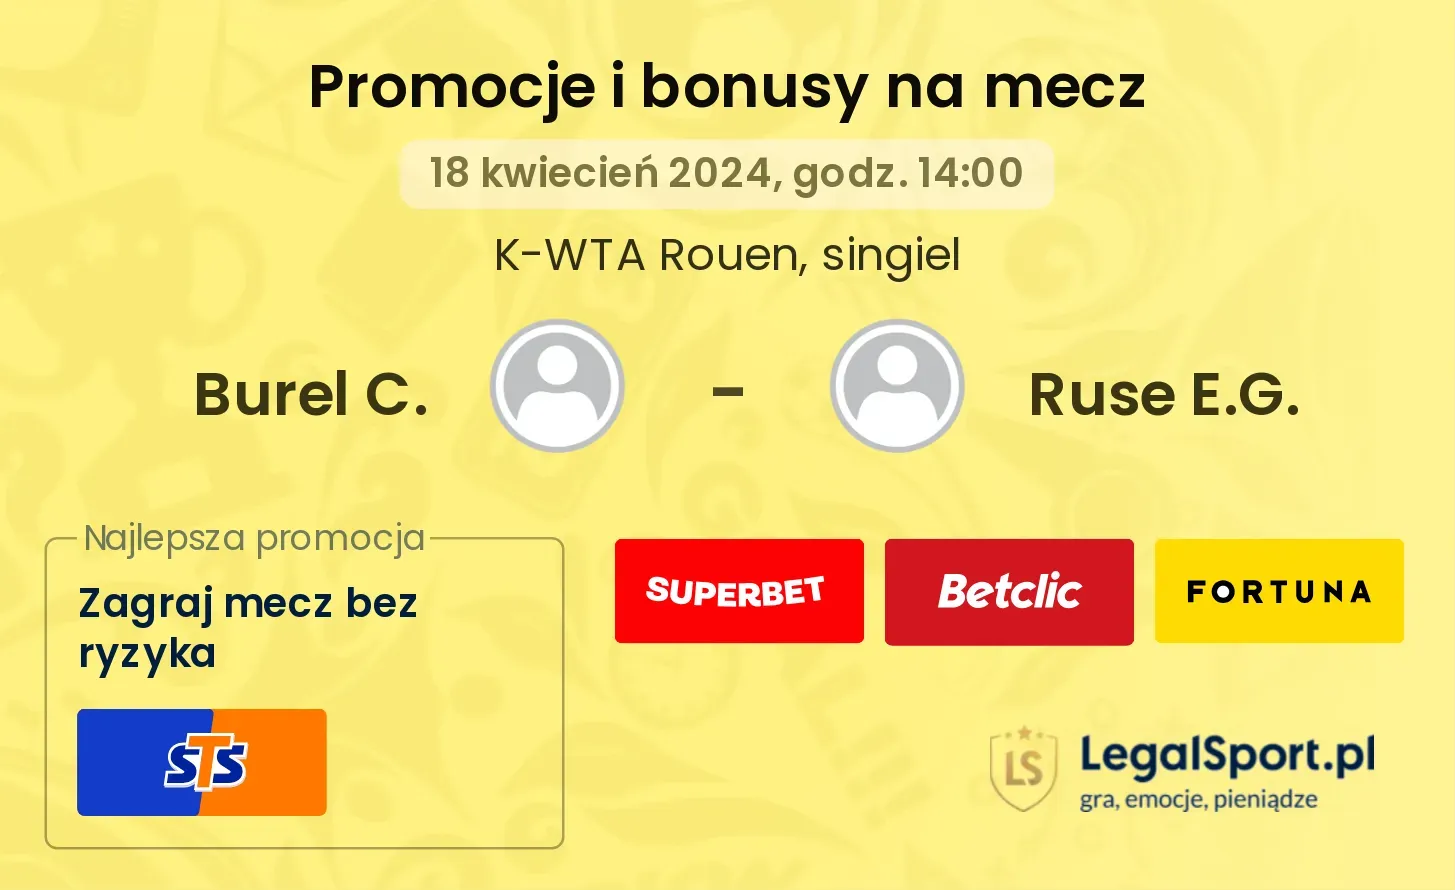 Burel C. - Ruse E.G. promocje bonusy na mecz